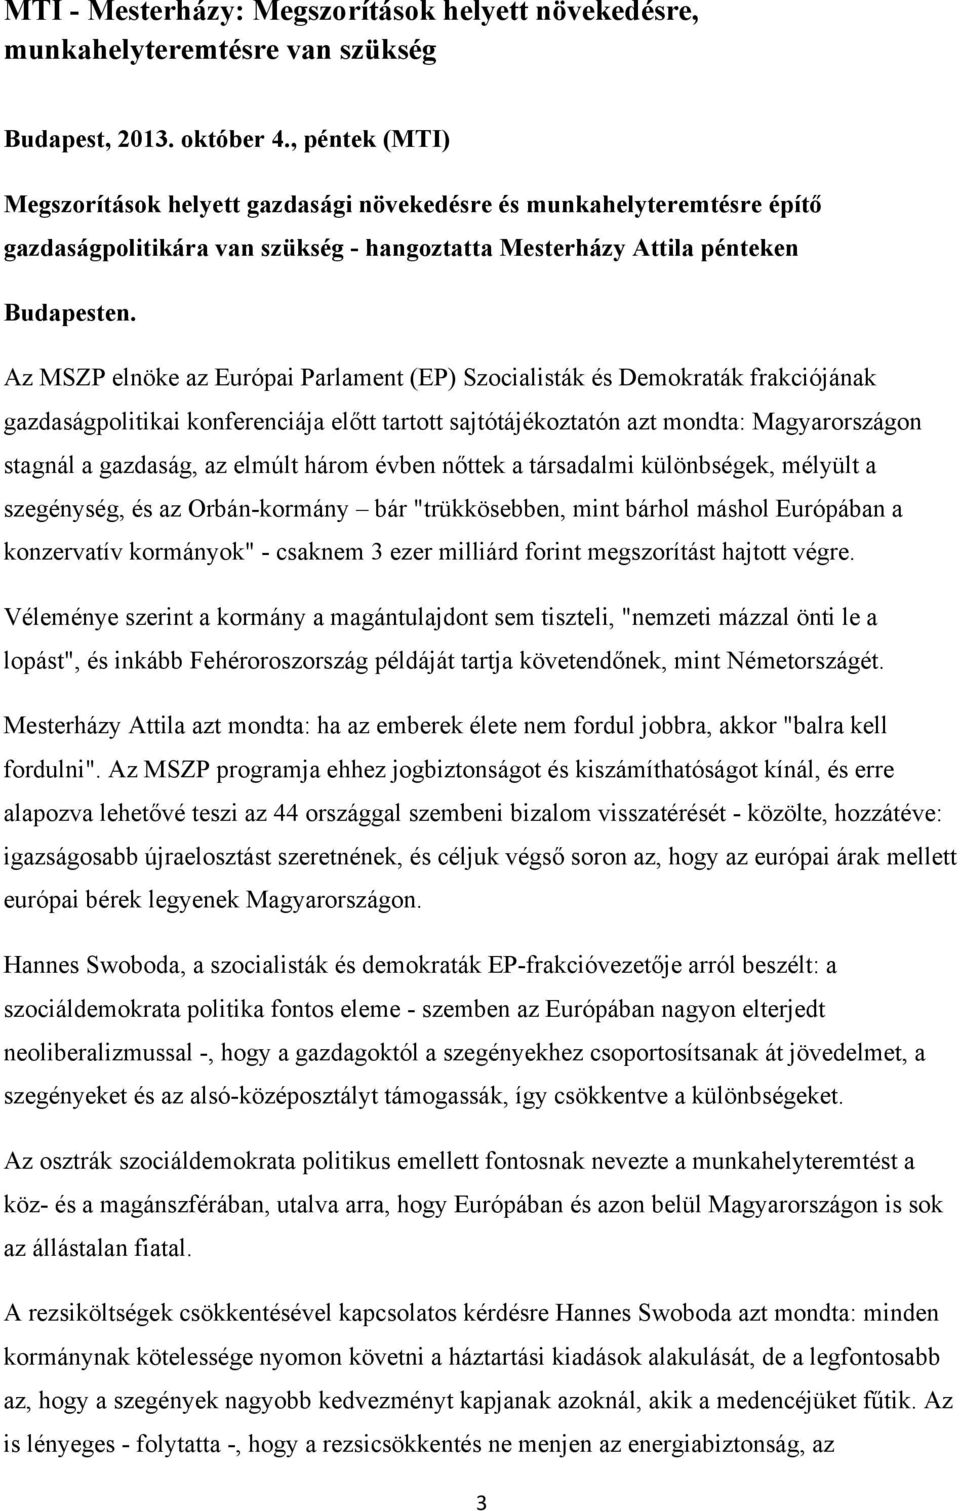 Az MSZP elnöke az Európai Parlament (EP) Szocialisták és Demokraták frakciójának gazdaságpolitikai konferenciája előtt tartott sajtótájékoztatón azt mondta: Magyarországon stagnál a gazdaság, az